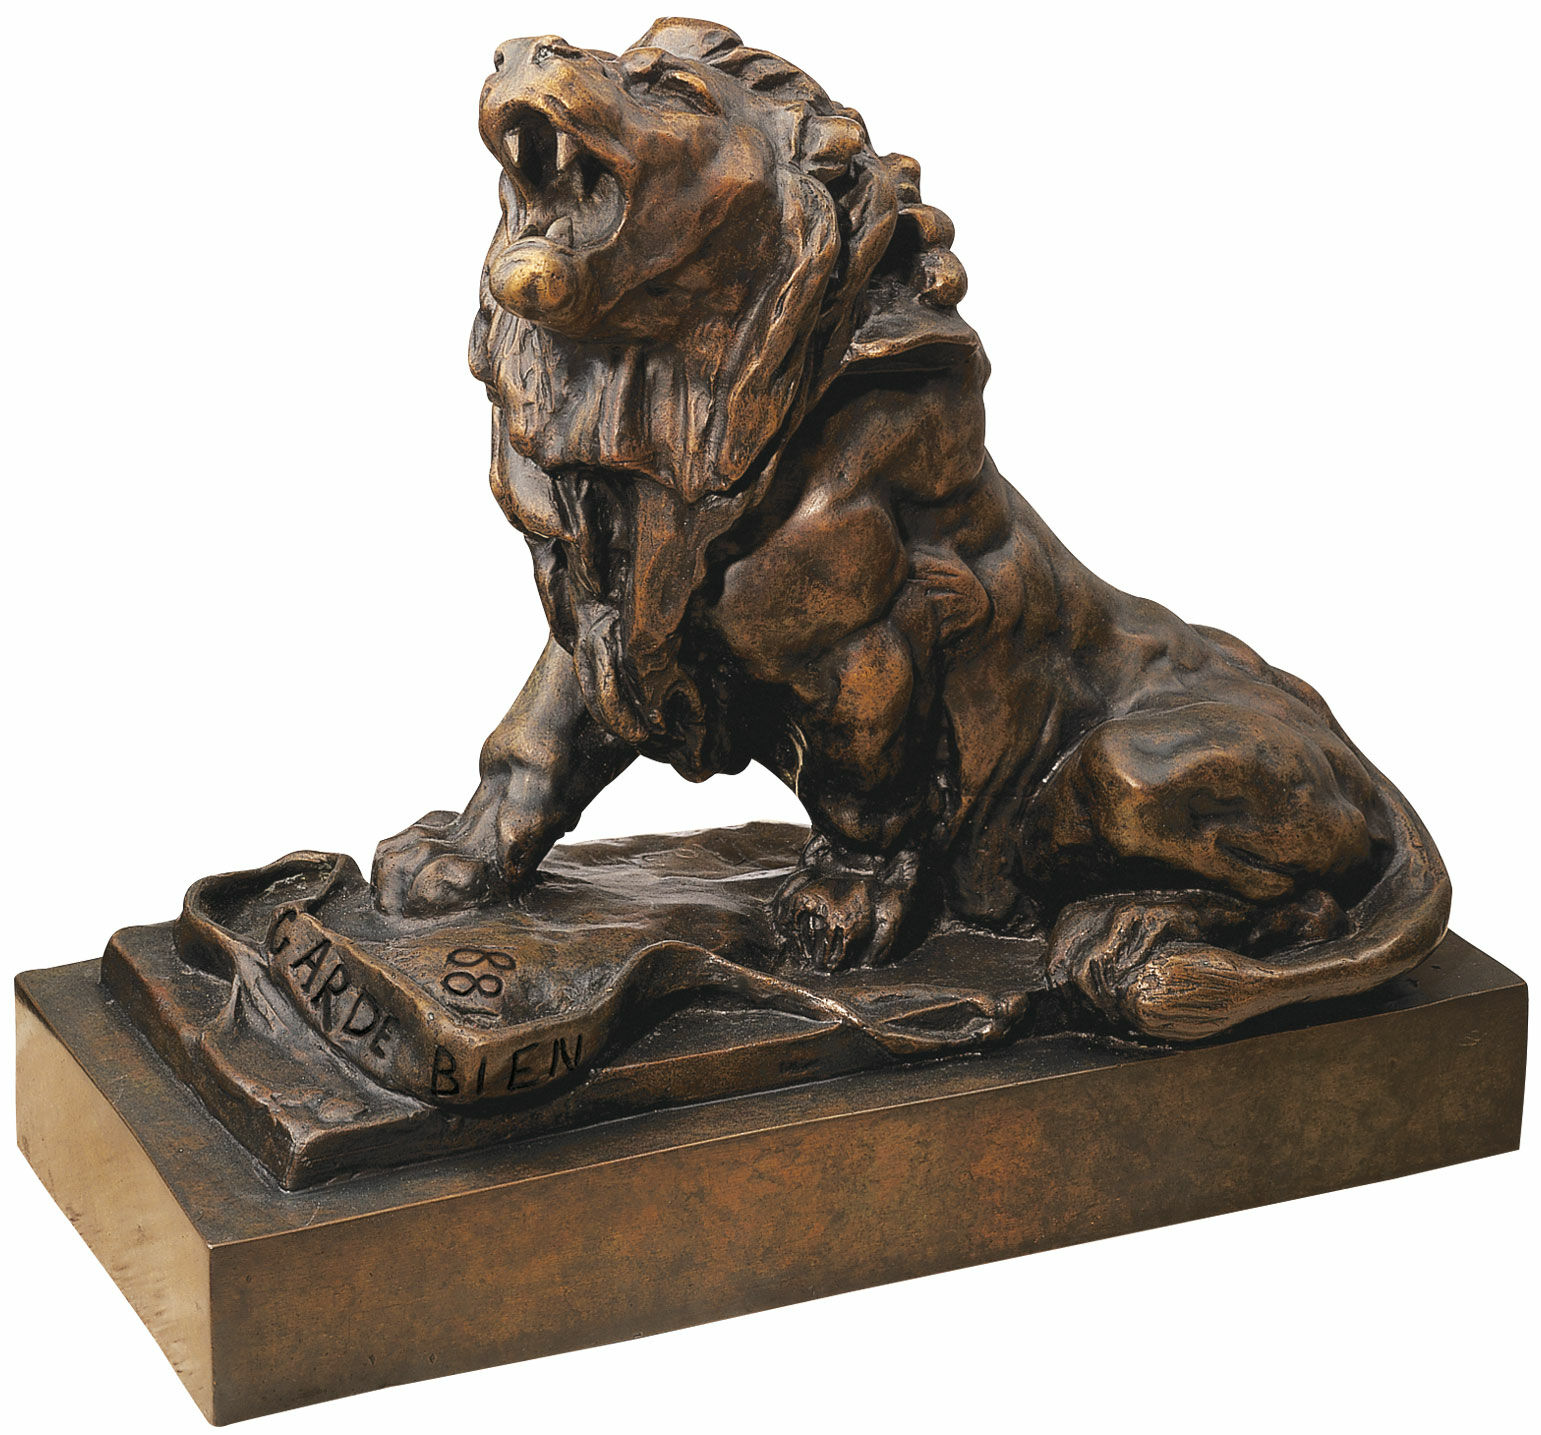 Sculpture "Le lion qui pleure", version bronze von Auguste Rodin